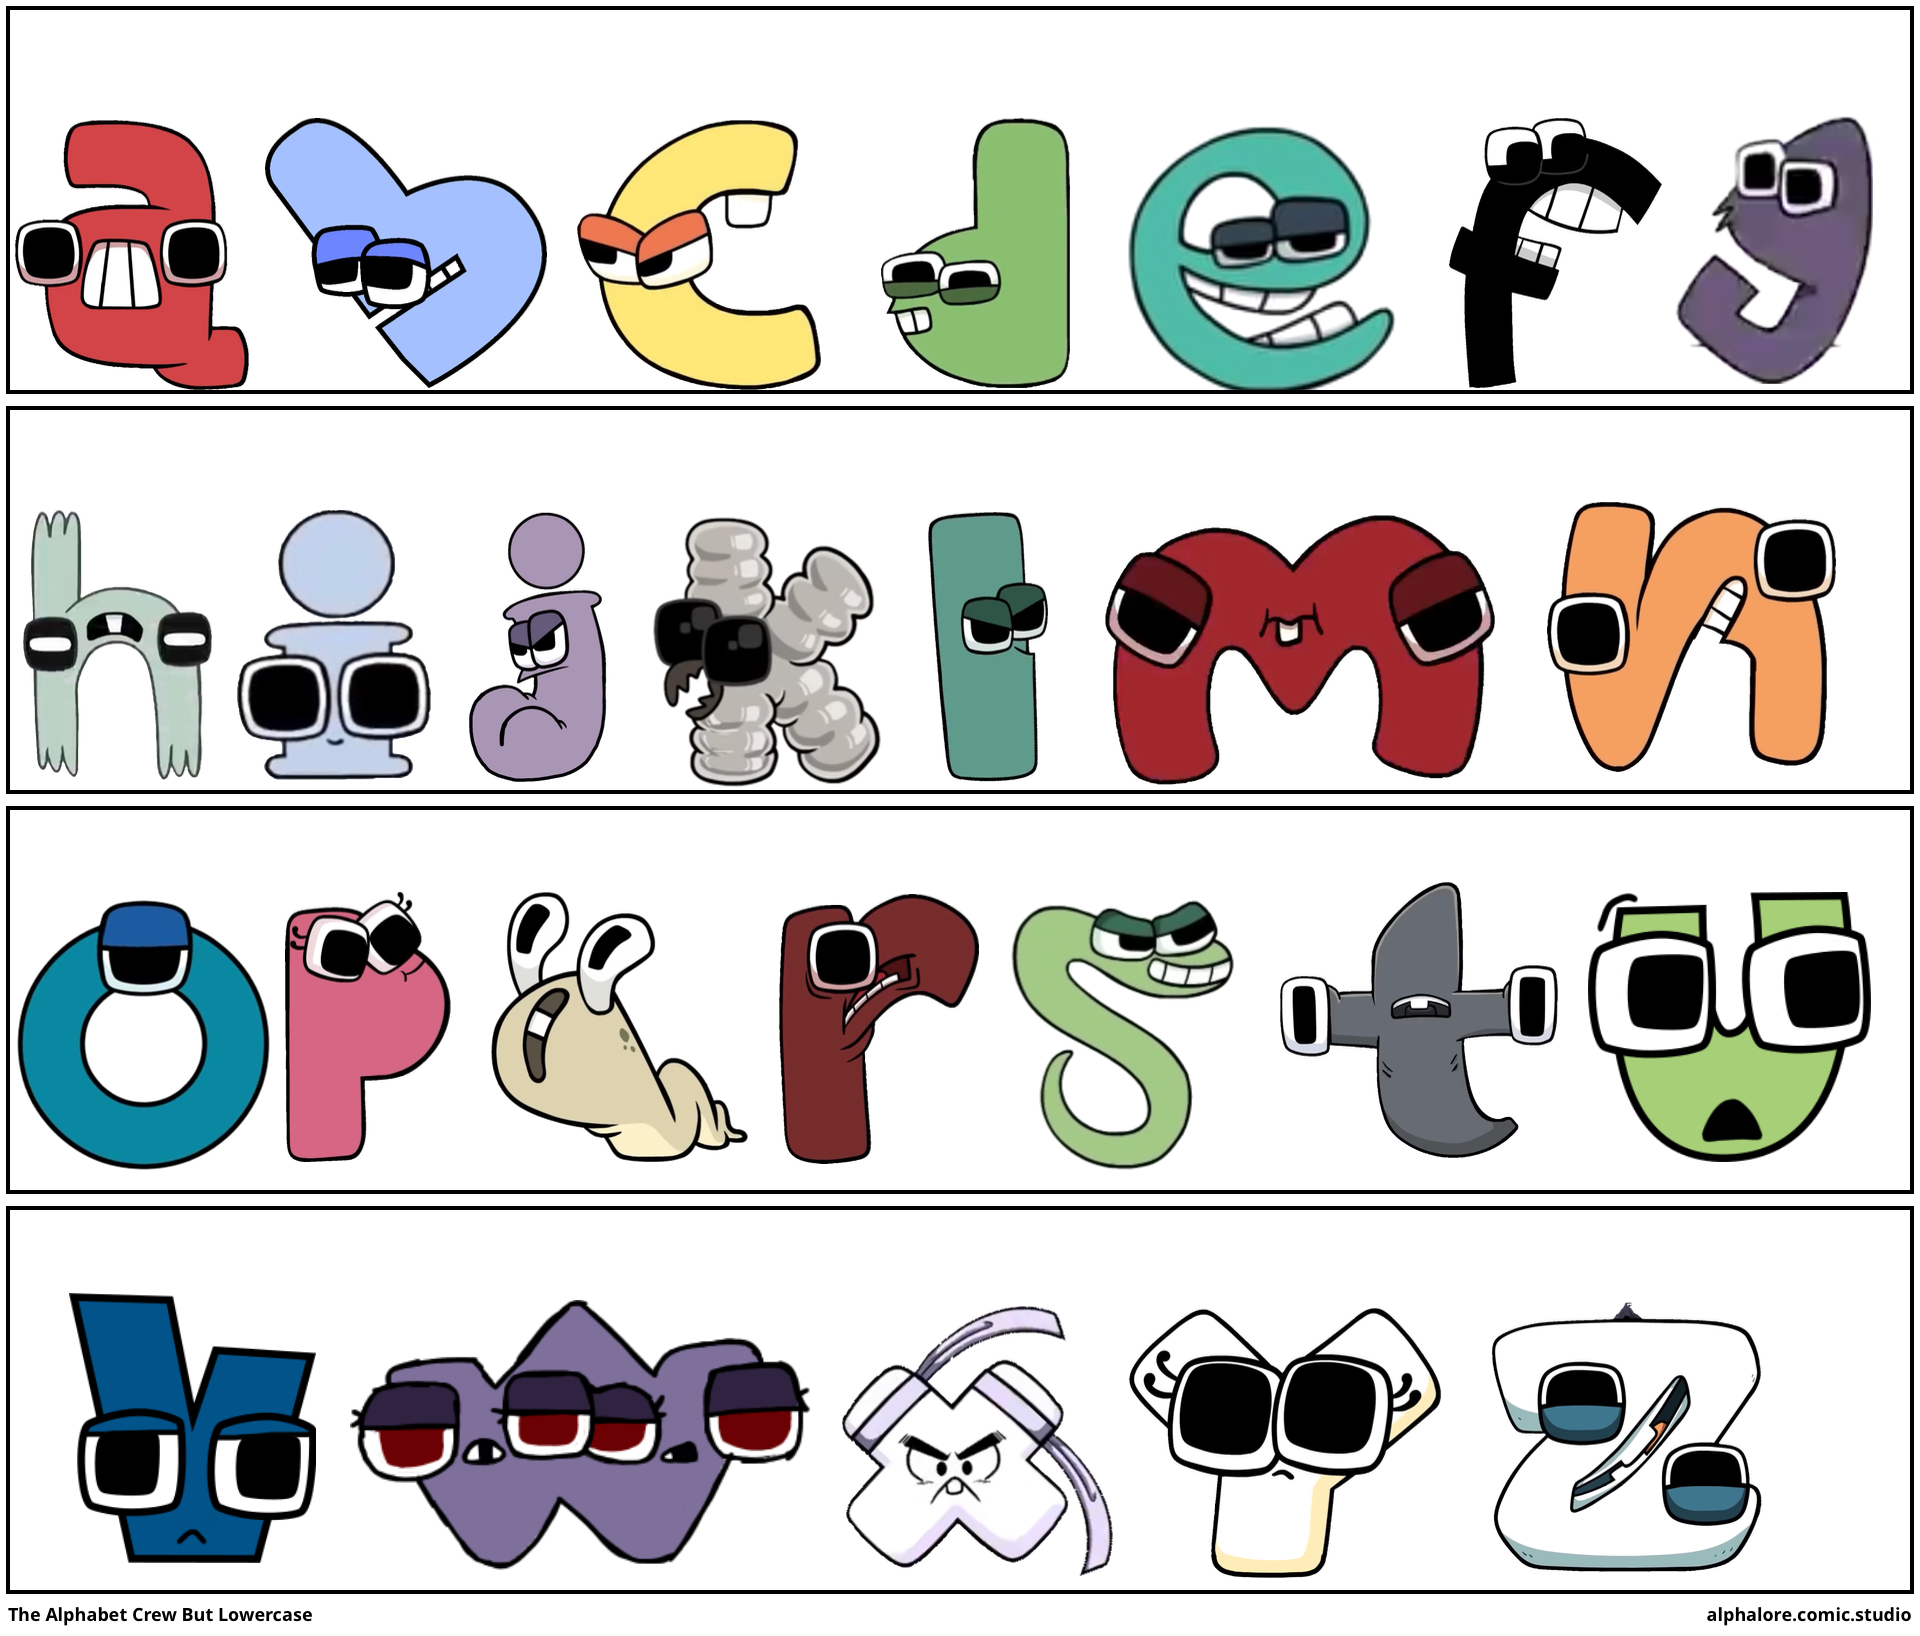 The Alphabet Crew But Lowercase - Comic Studio